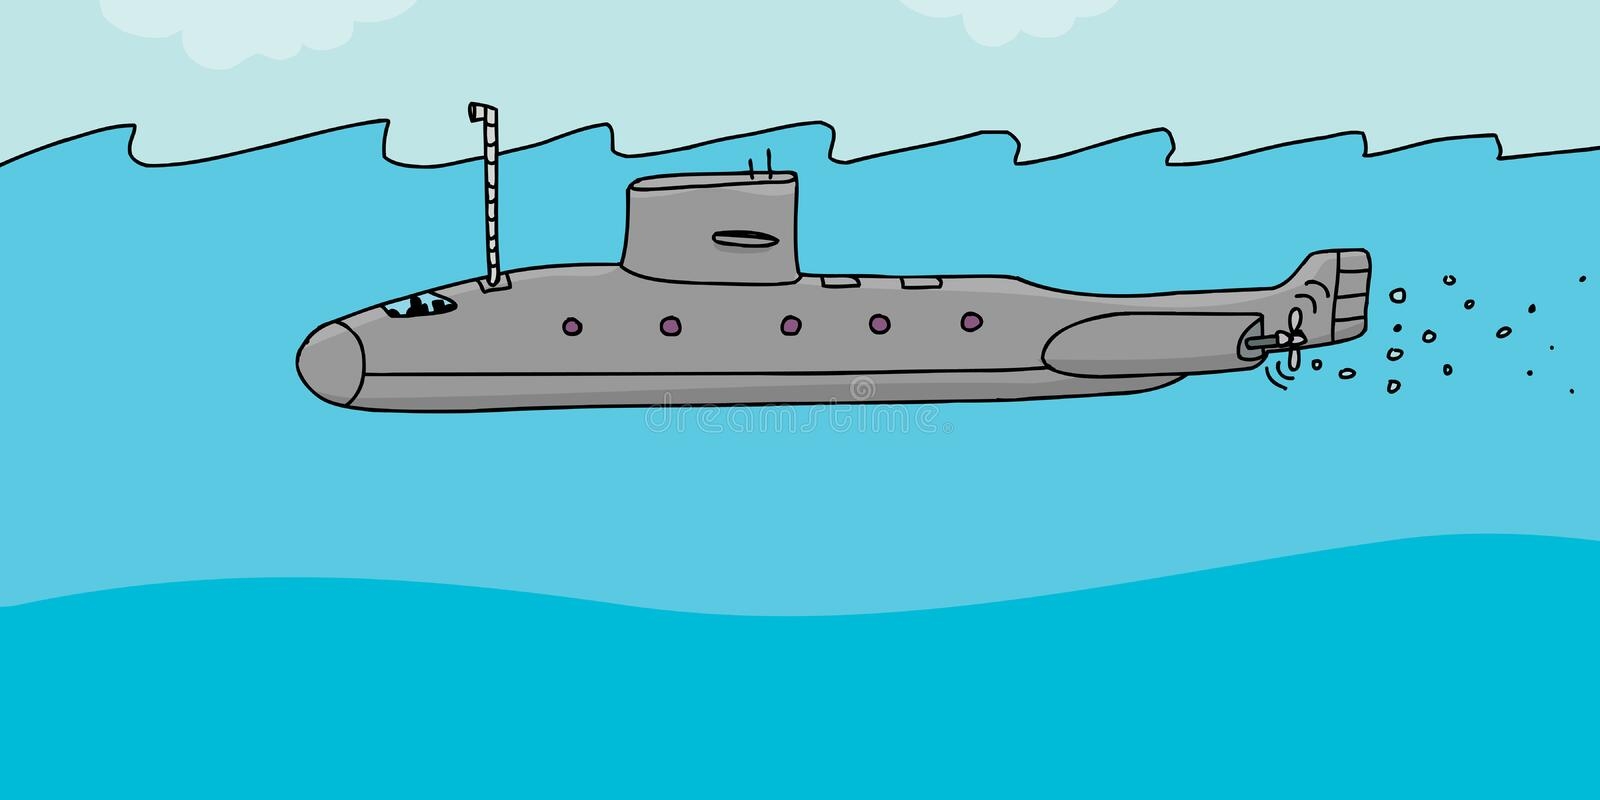 Перископ подводной лодки рисунок